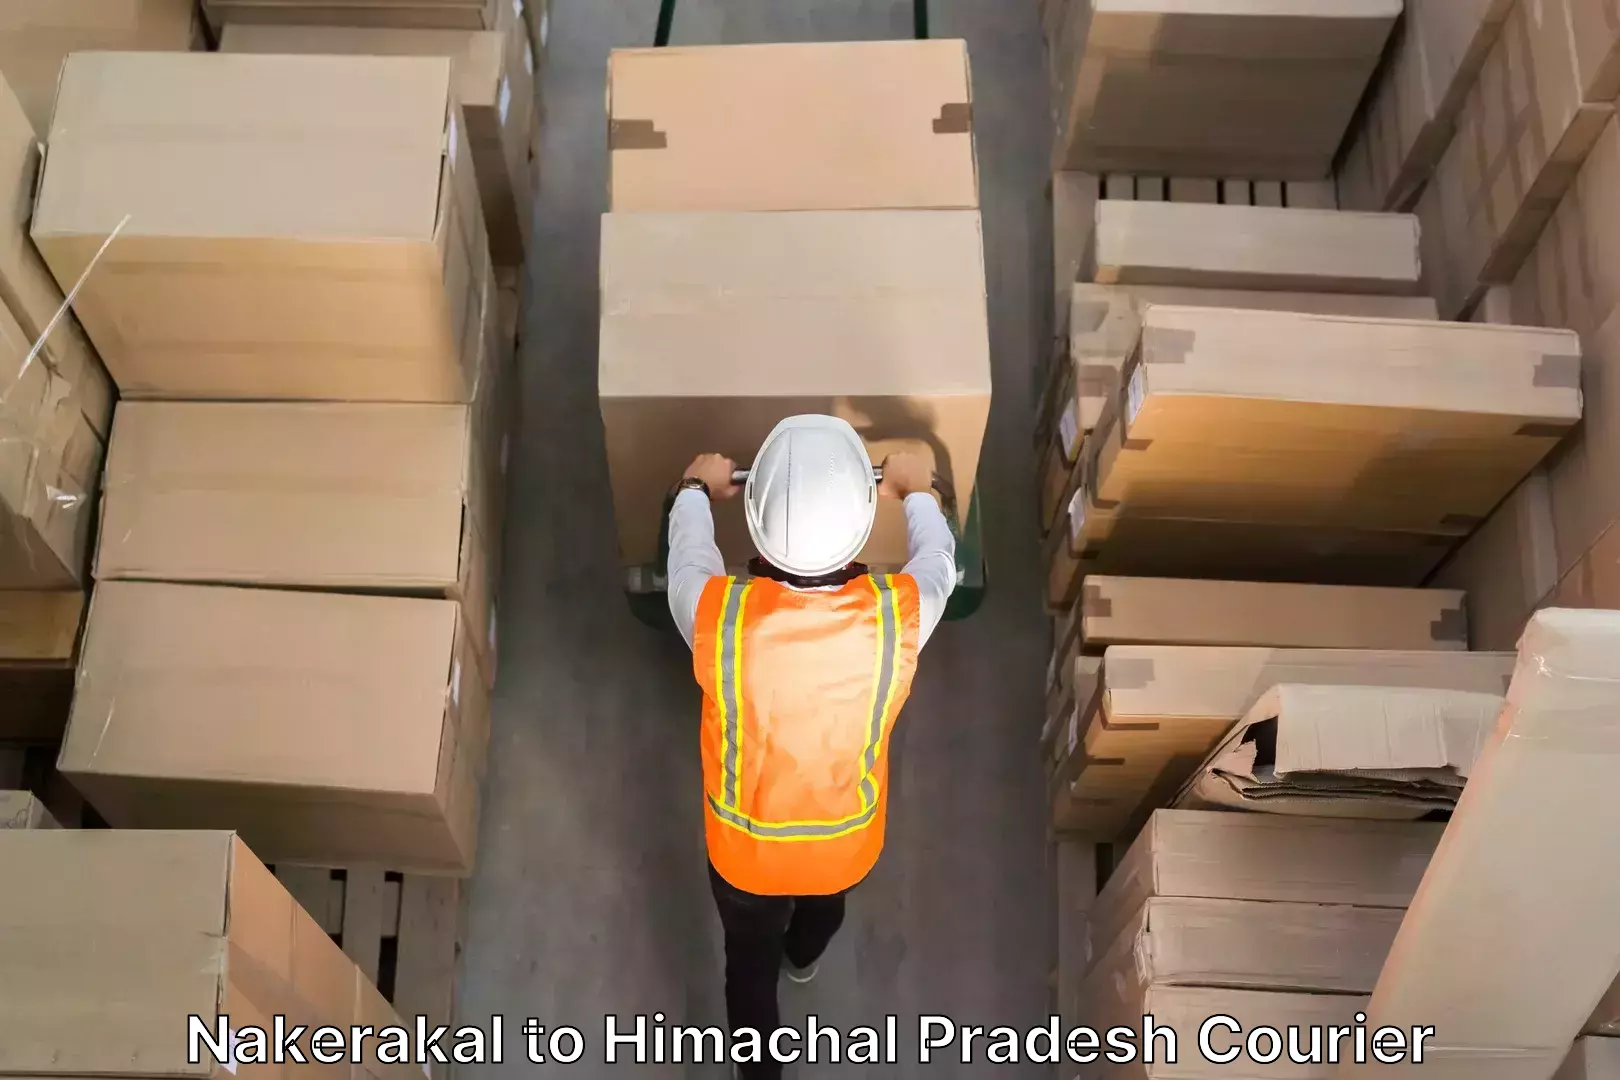 Furniture moving experts in Nakerakal to Himachal Pradesh